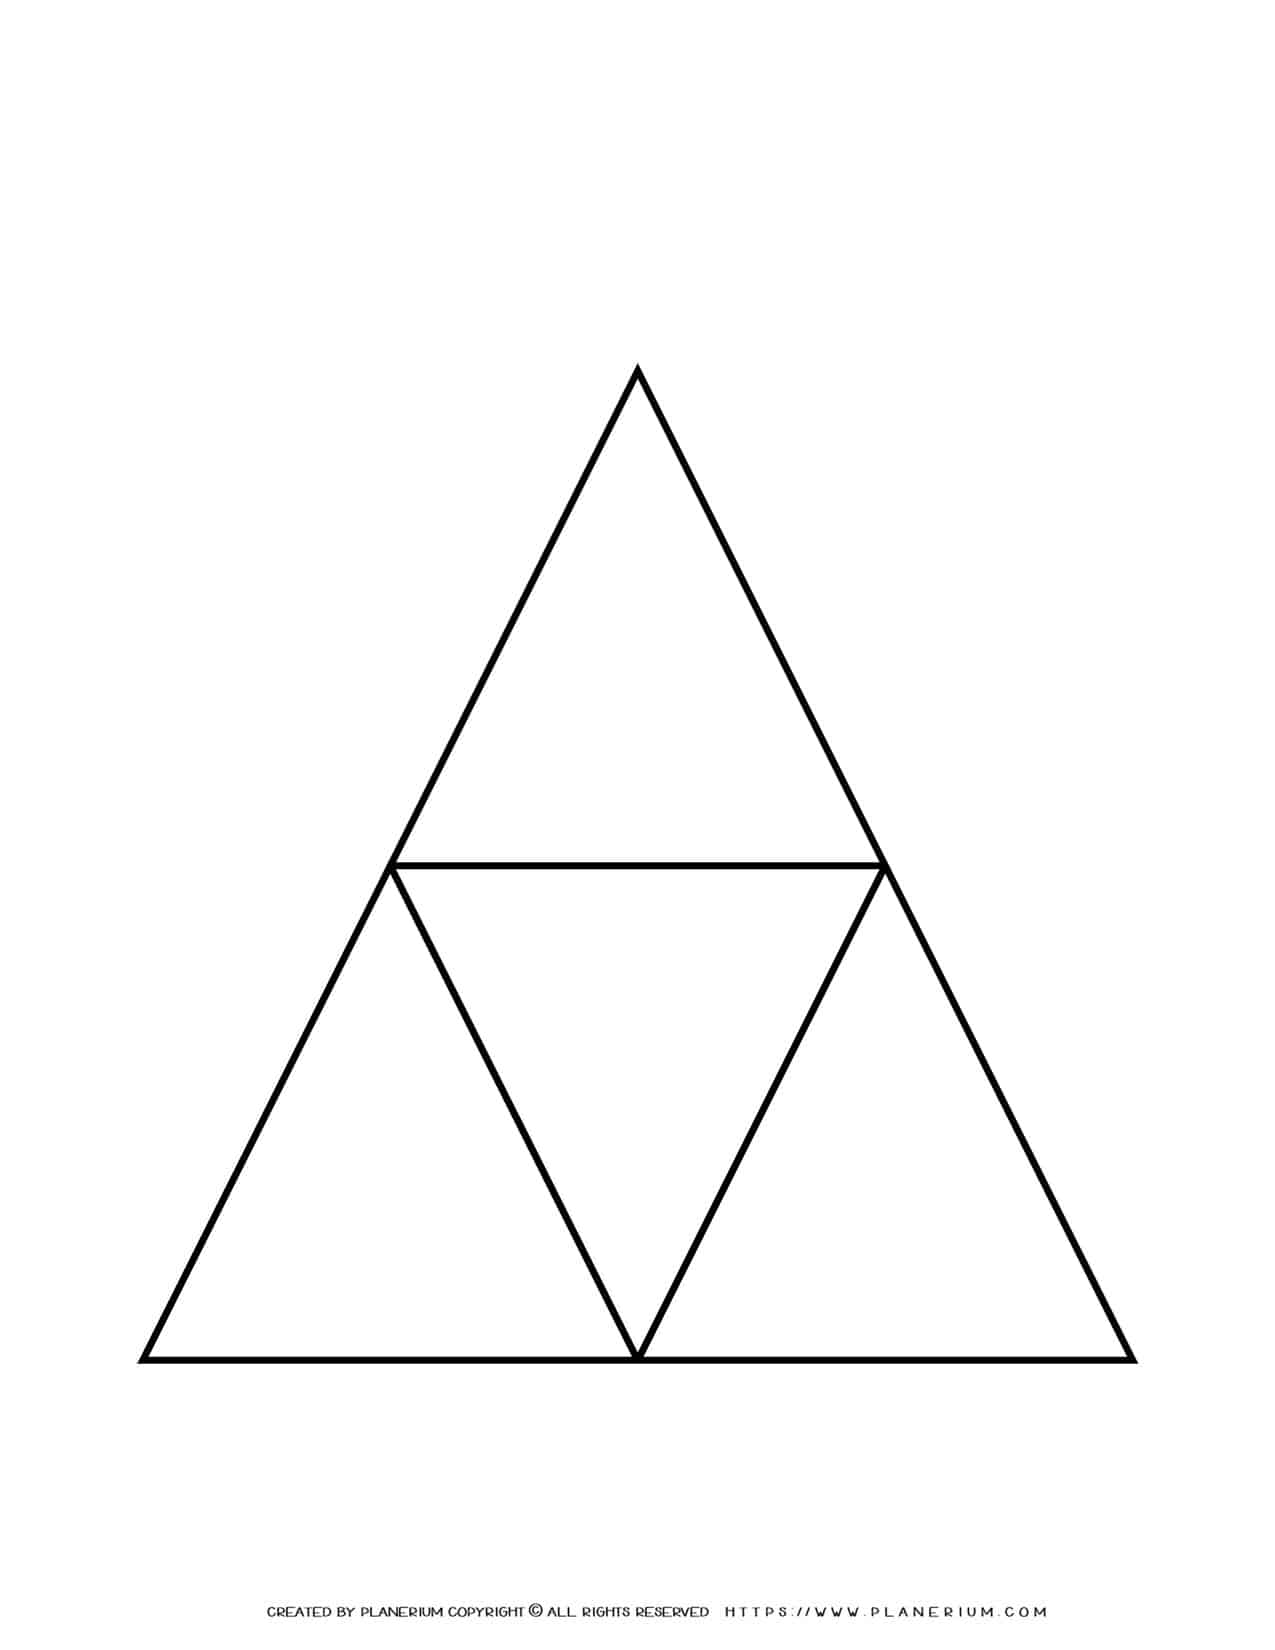 Graphic Organizer - Triangle Diagram | Planerium